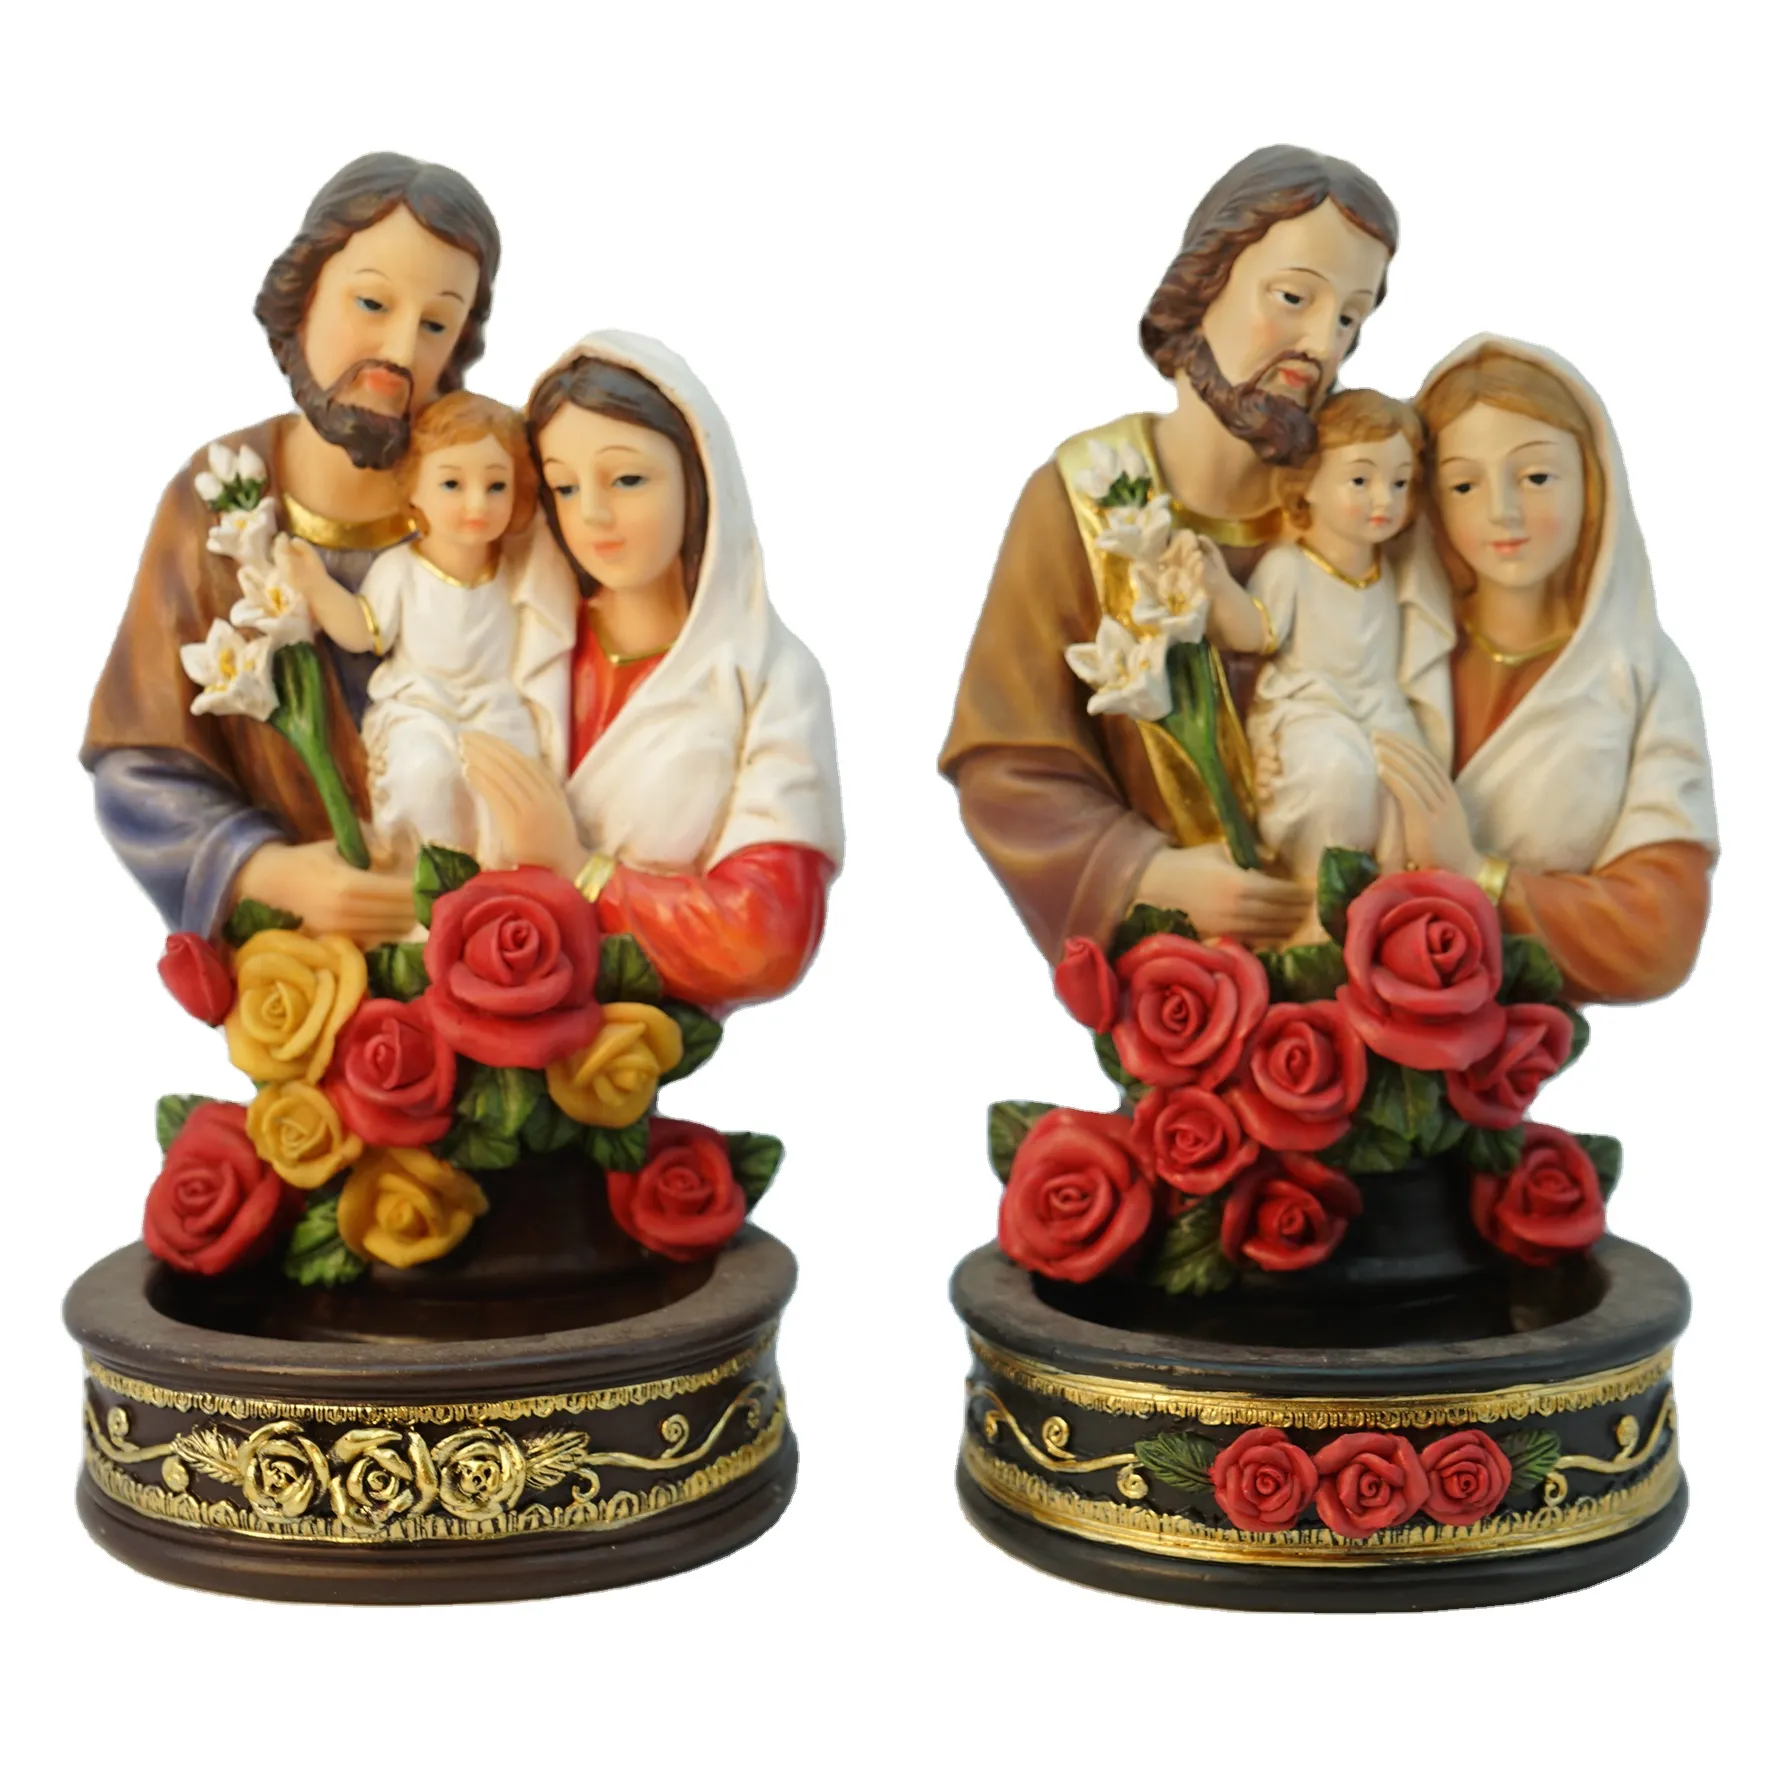 Top Grace Love Holy Family On The Flower Resin католические религиозные предметы с кастрюлей для свечей статуя Марии и Иосифа на Рождество